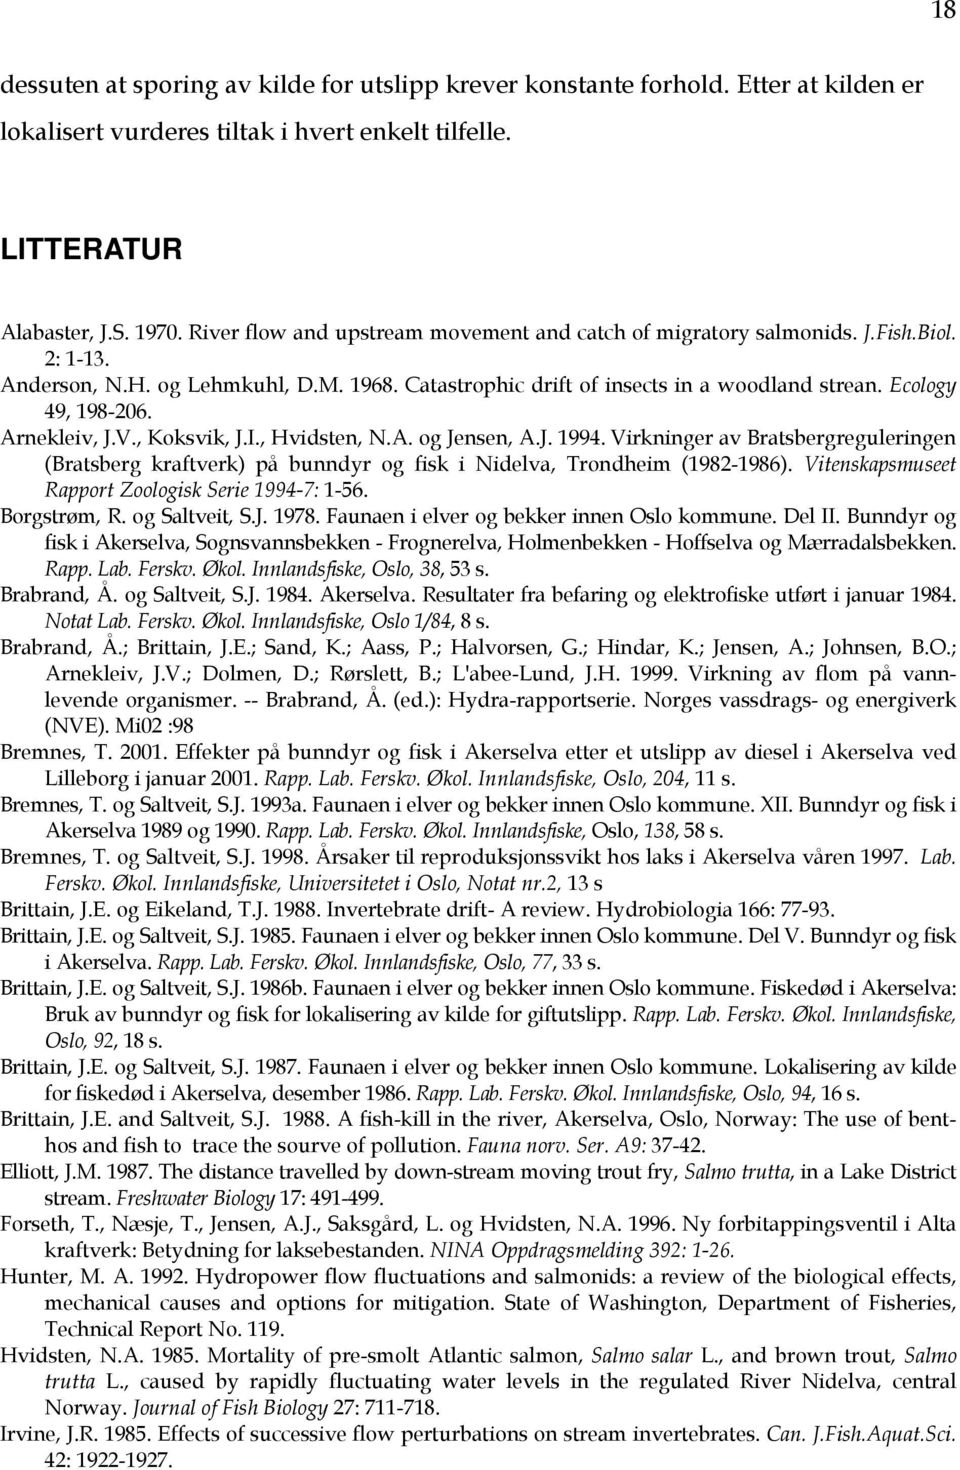 Arnekleiv, J.V., Koksvik, J.I., Hvidsten, N.A. og Jensen, A.J. 1994. Virkninger av Bratsbergreguleringen (Bratsberg kraftverk) på bunndyr og fisk i Nidelva, Trondheim (1982-1986).